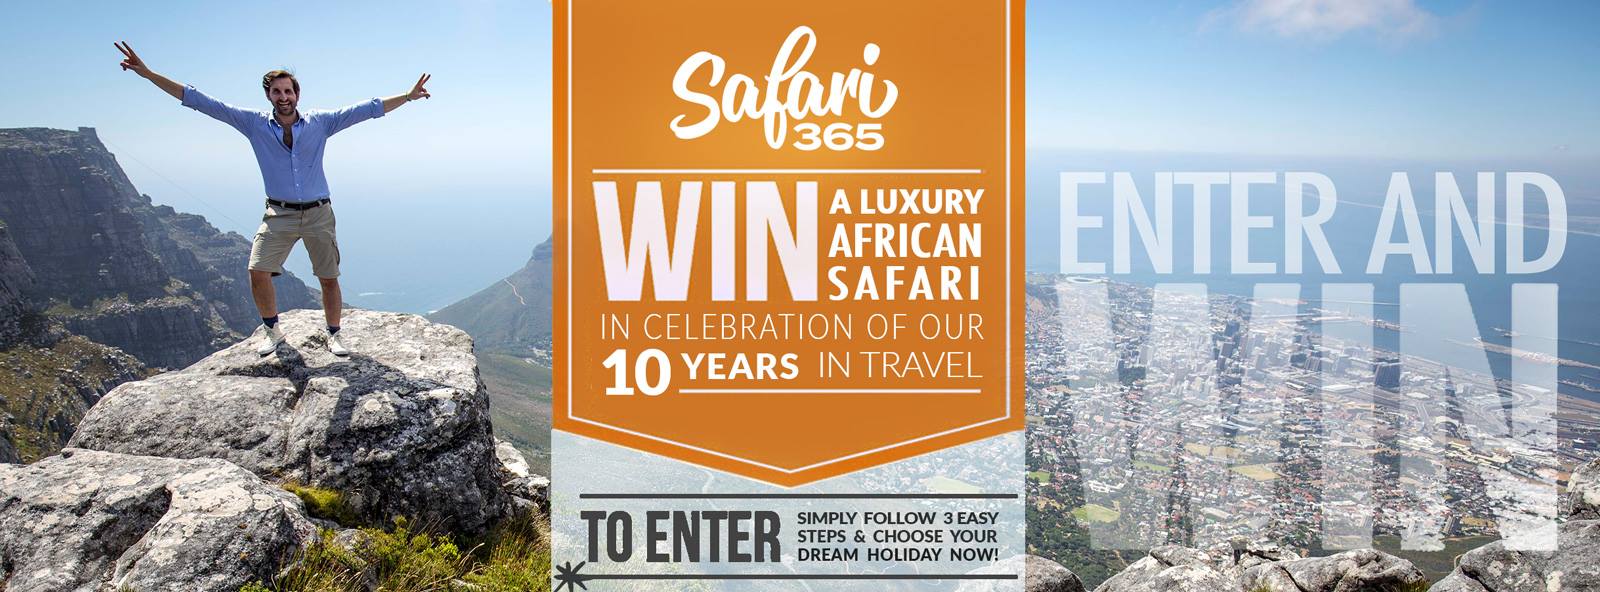 safari365 competition banner